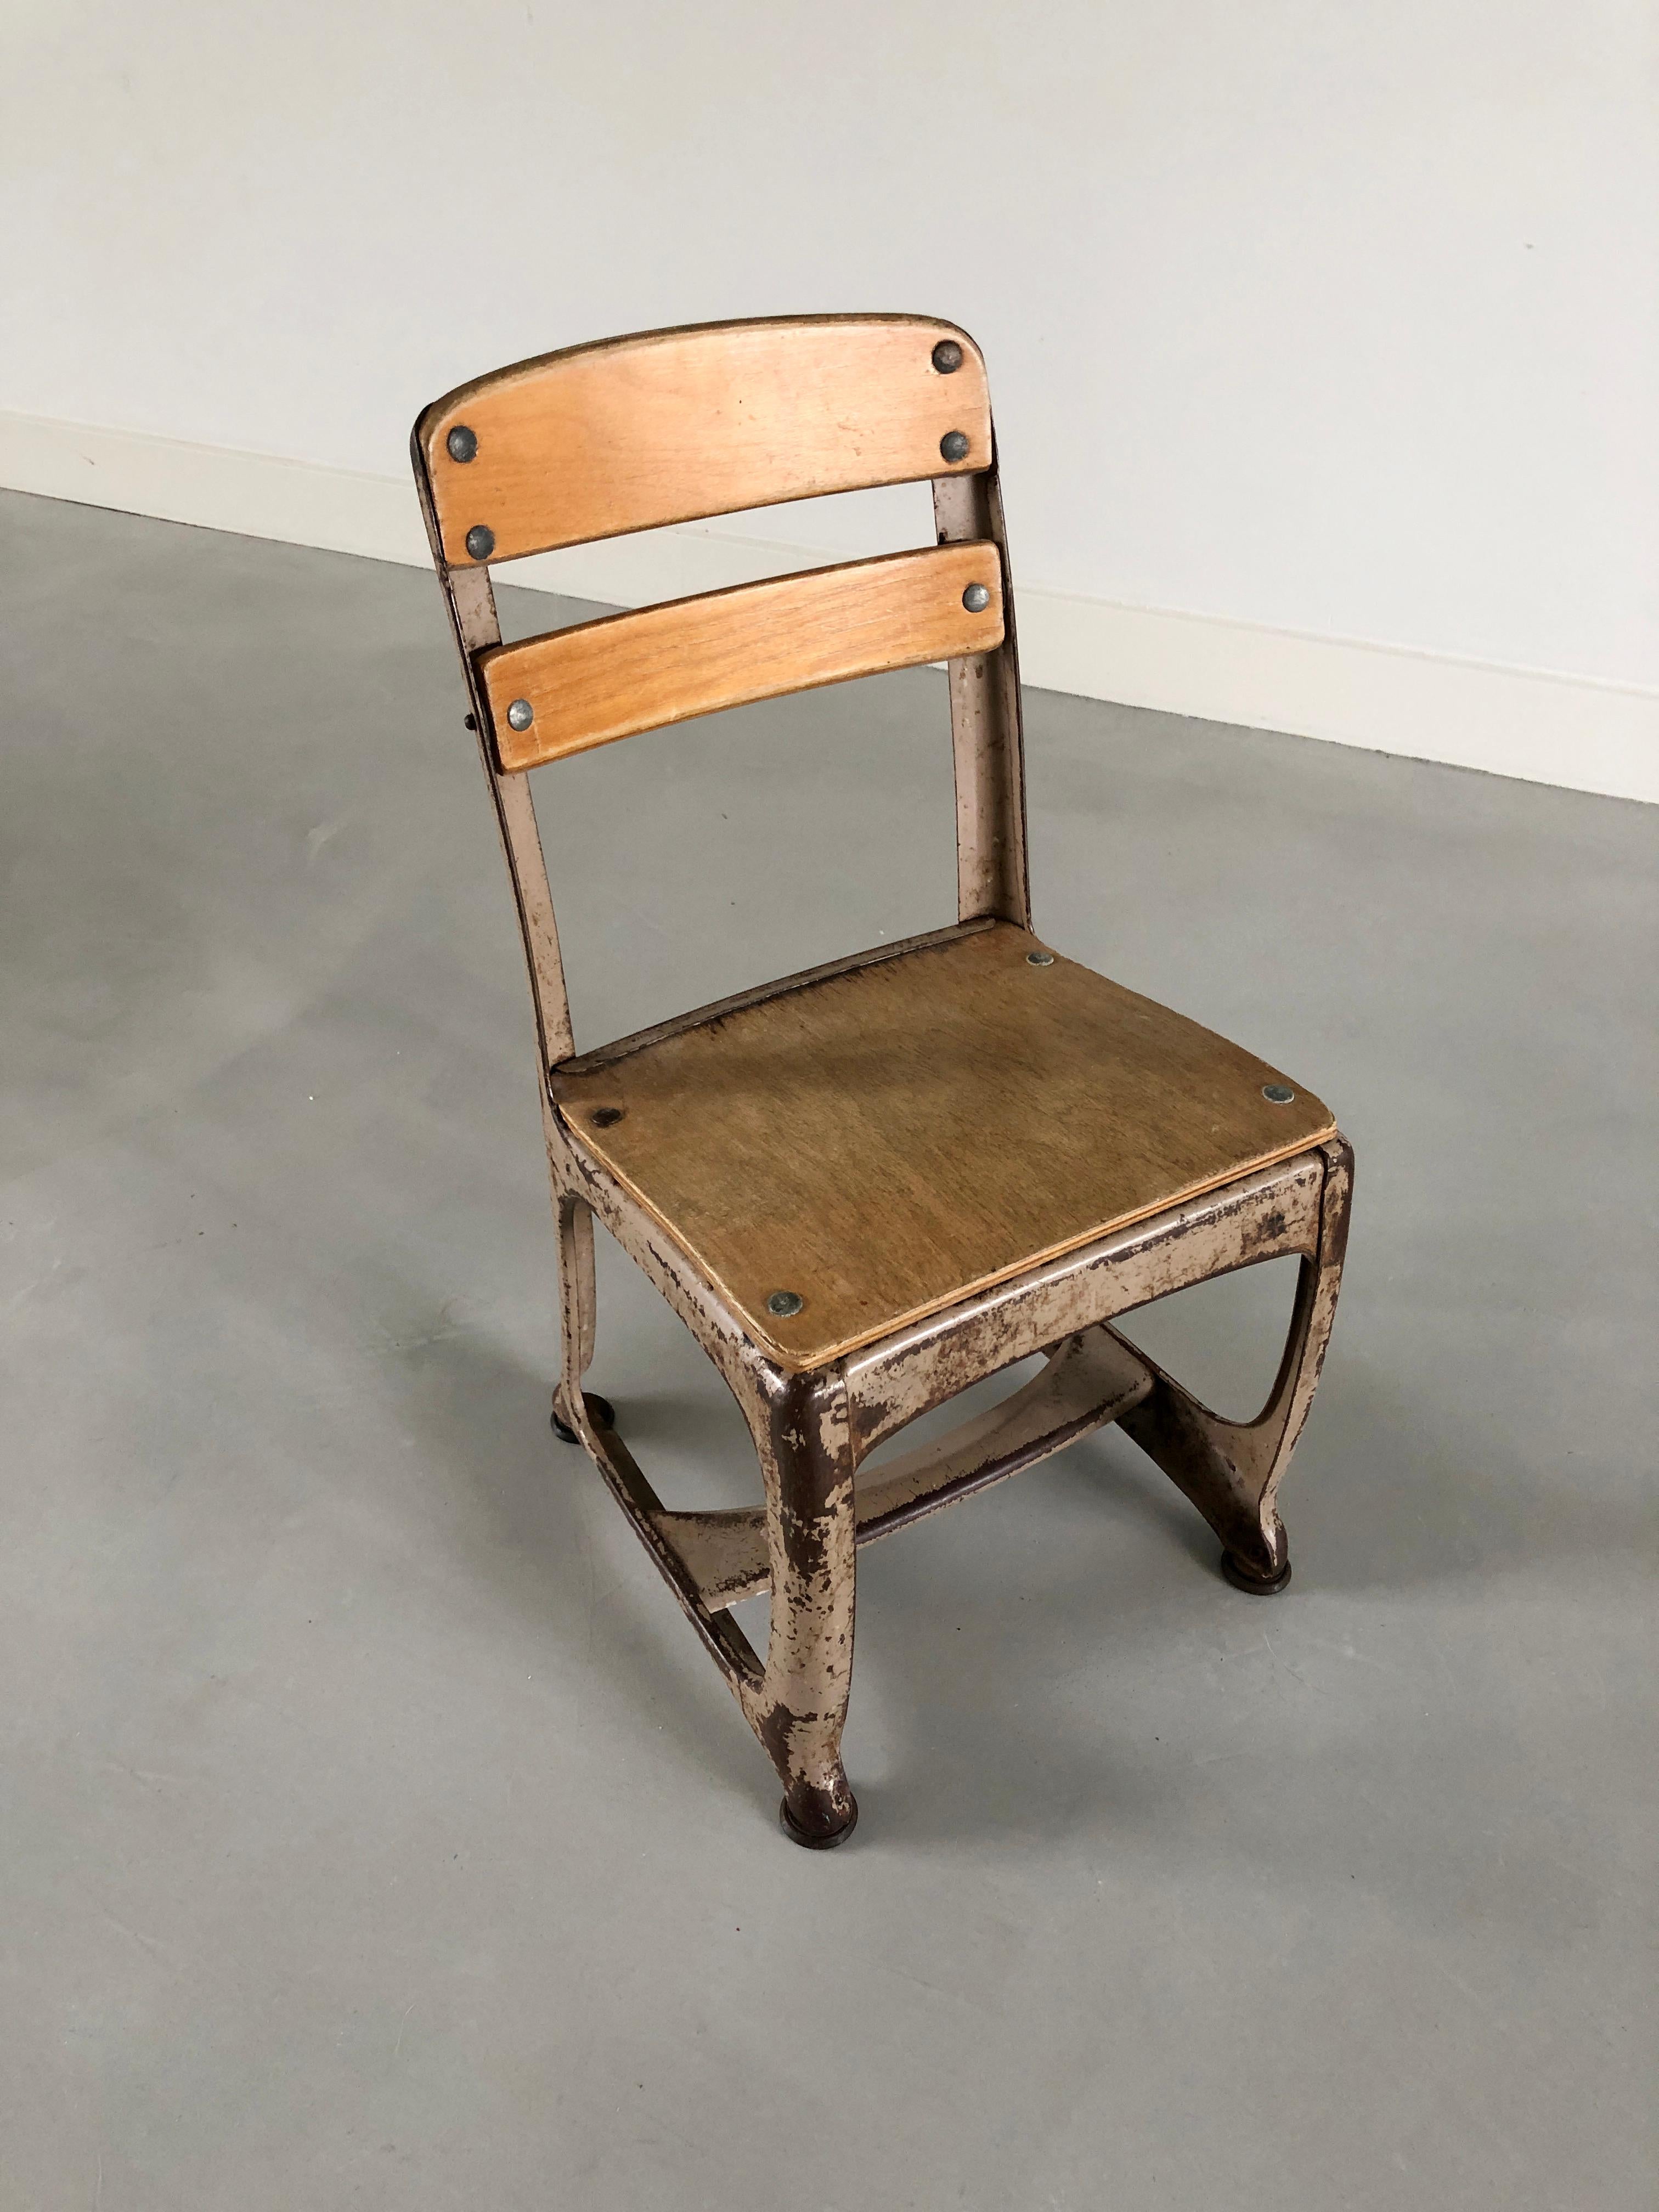 Très originale chaise d'enfant de style industriel de la société American Seating Company Of Grand Rapids, Michigan USA - No.11 - Model 368 - 
D-PATENT 126710 estampillé sur le devant - tampon de la société sous le siège.
La conception et le